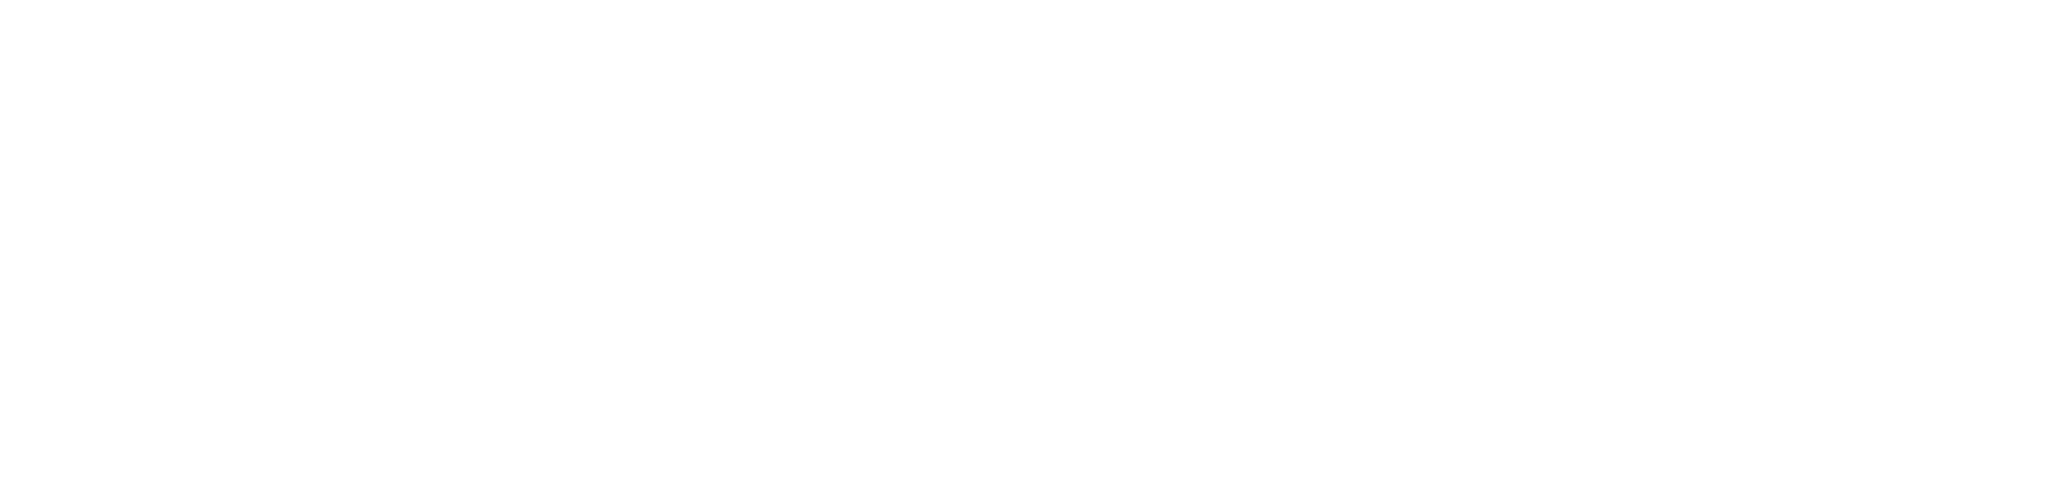 Law Wales